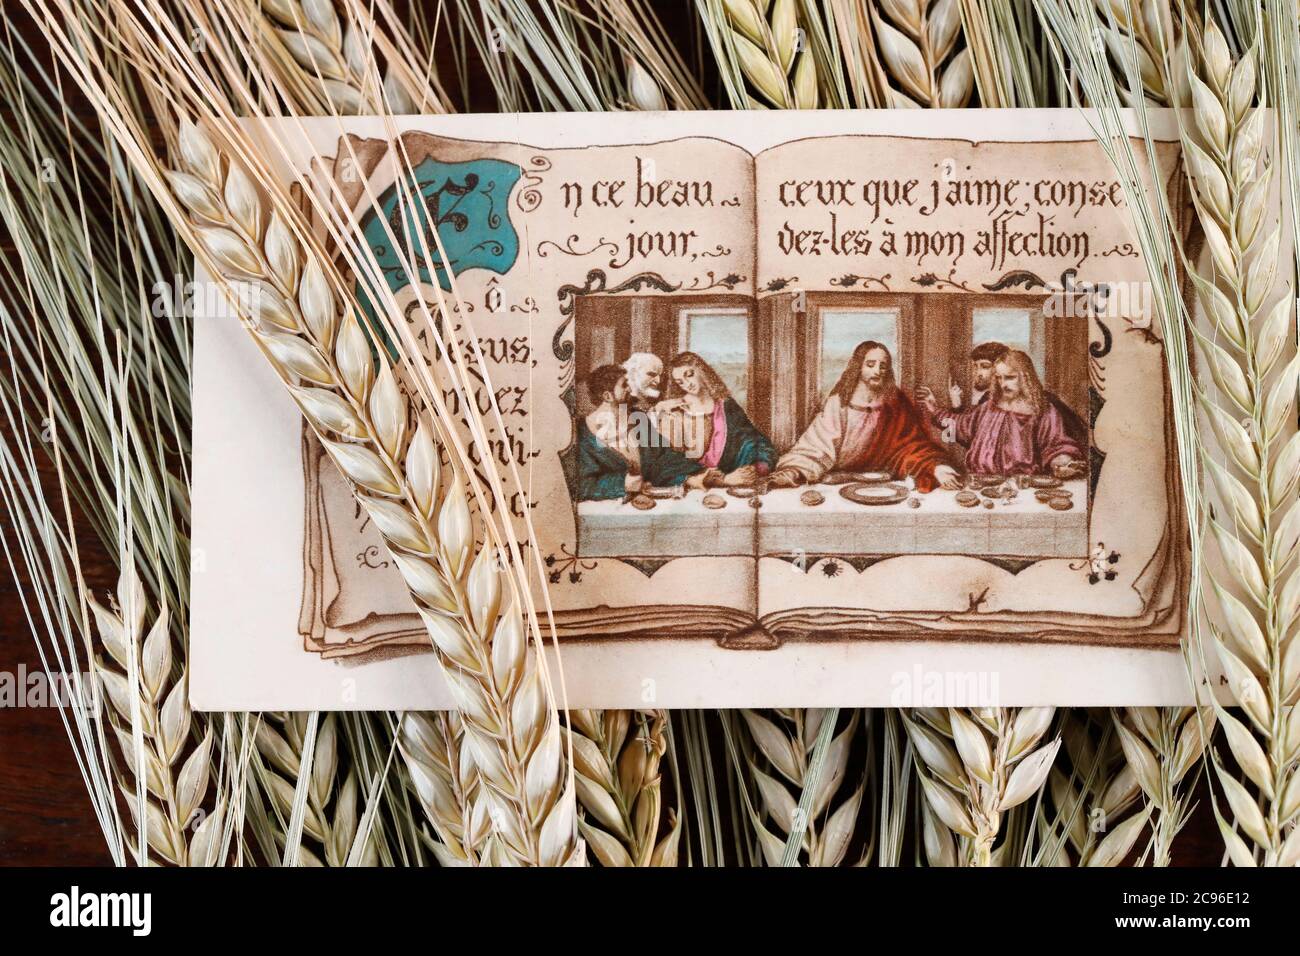 Religiöses Bild. Das letzte Abendessen und Ähren von Weizen. Frankreich. Stockfoto